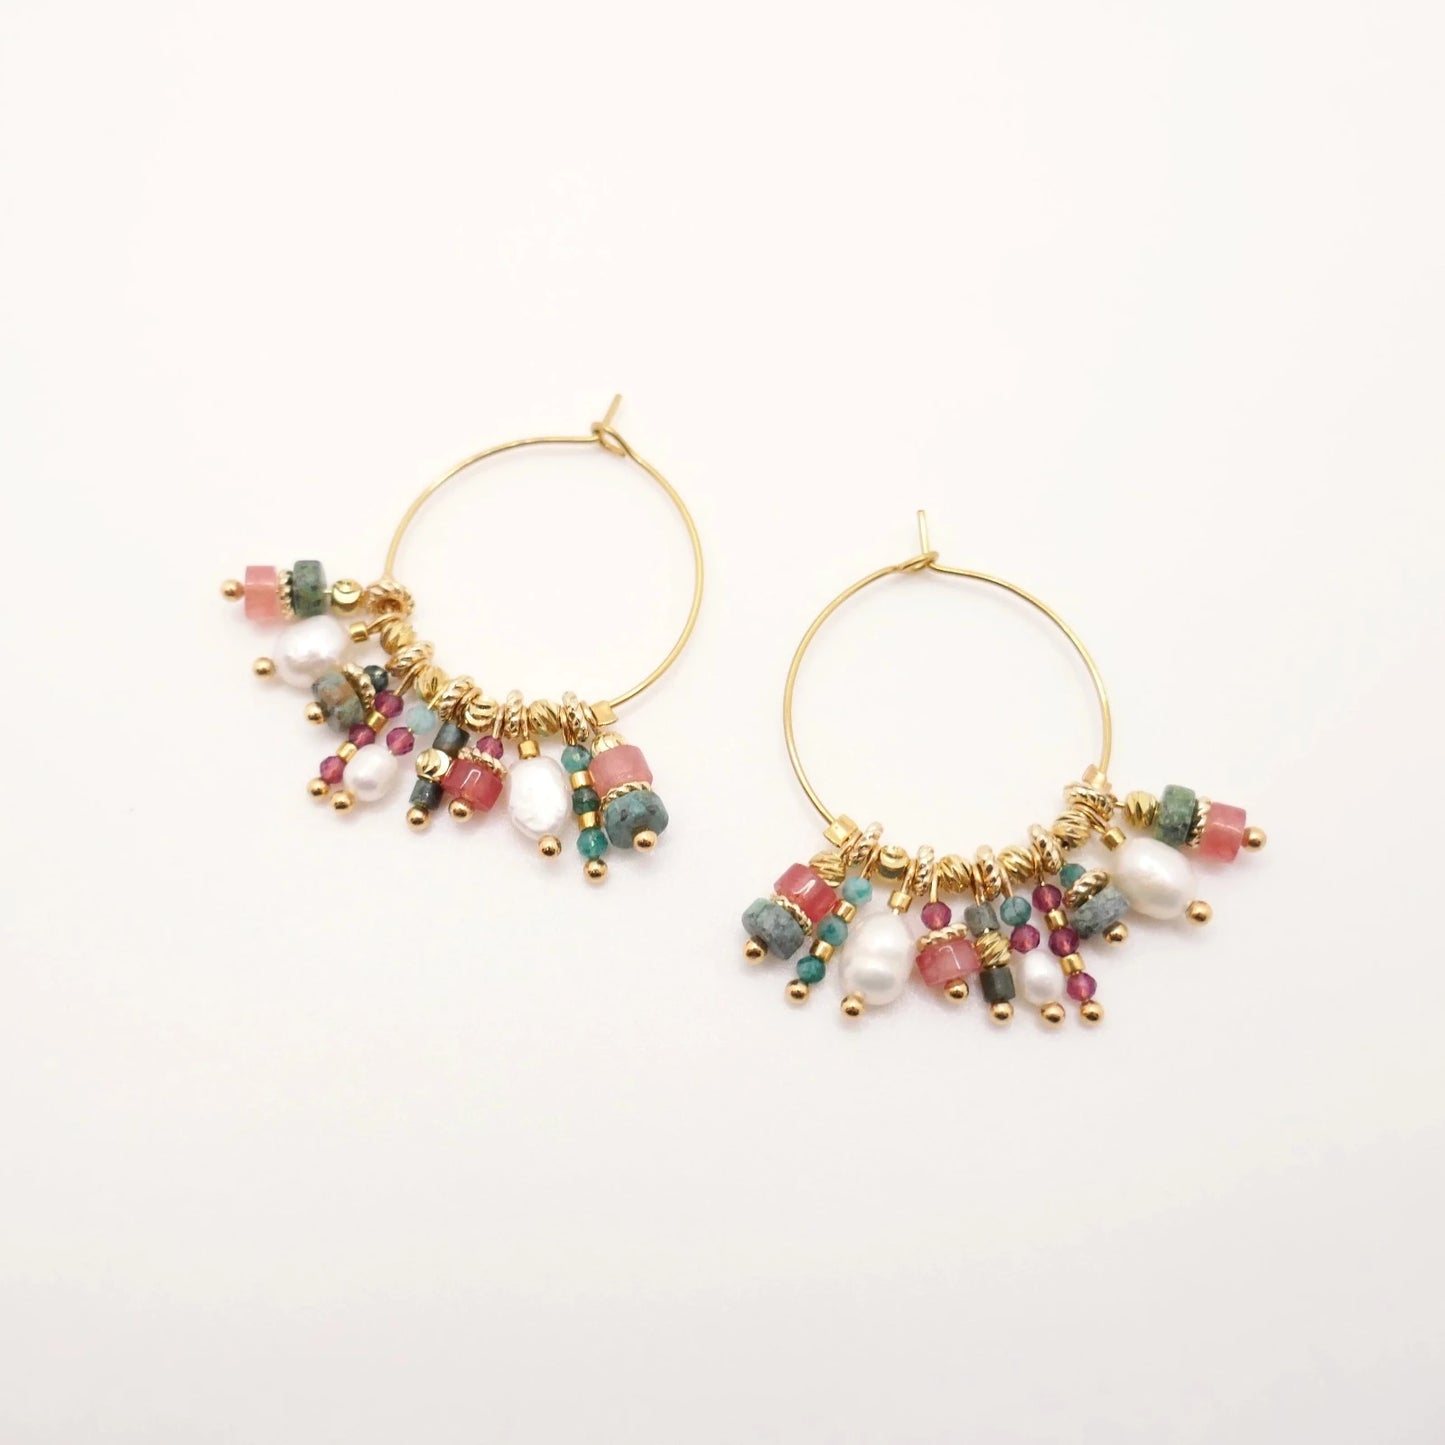 Mini boucles d'oreilles créoles dorées ornées de perles et pierres semi-précieuses colorées rouges et vertes